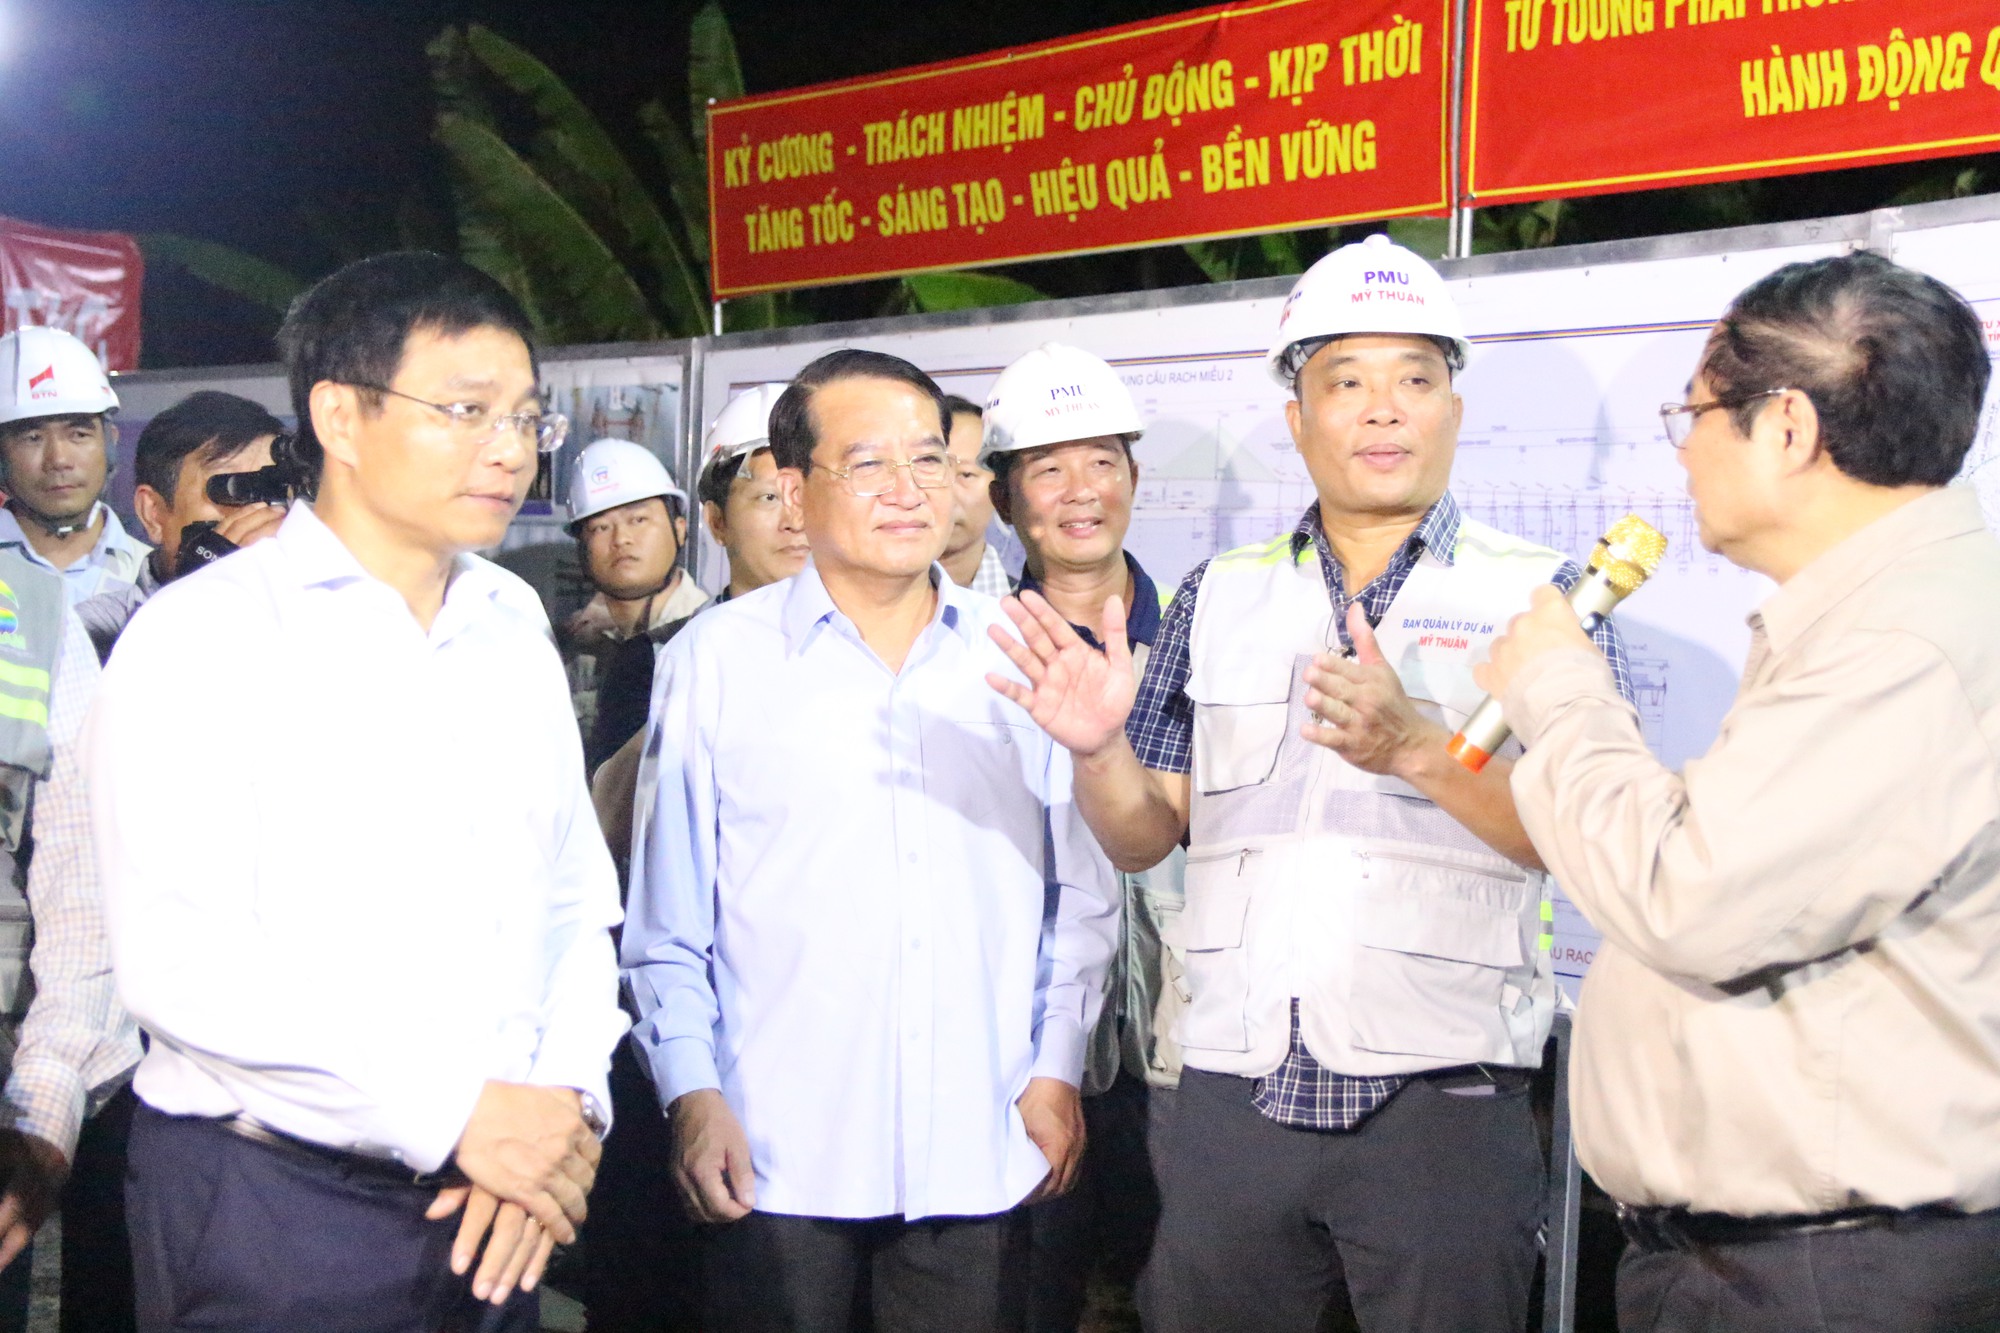 Chùm ảnh Thủ tướng Phạm Minh Chính kiểm tra cầu Rạch Miễu 2 trong đêm- Ảnh 10.